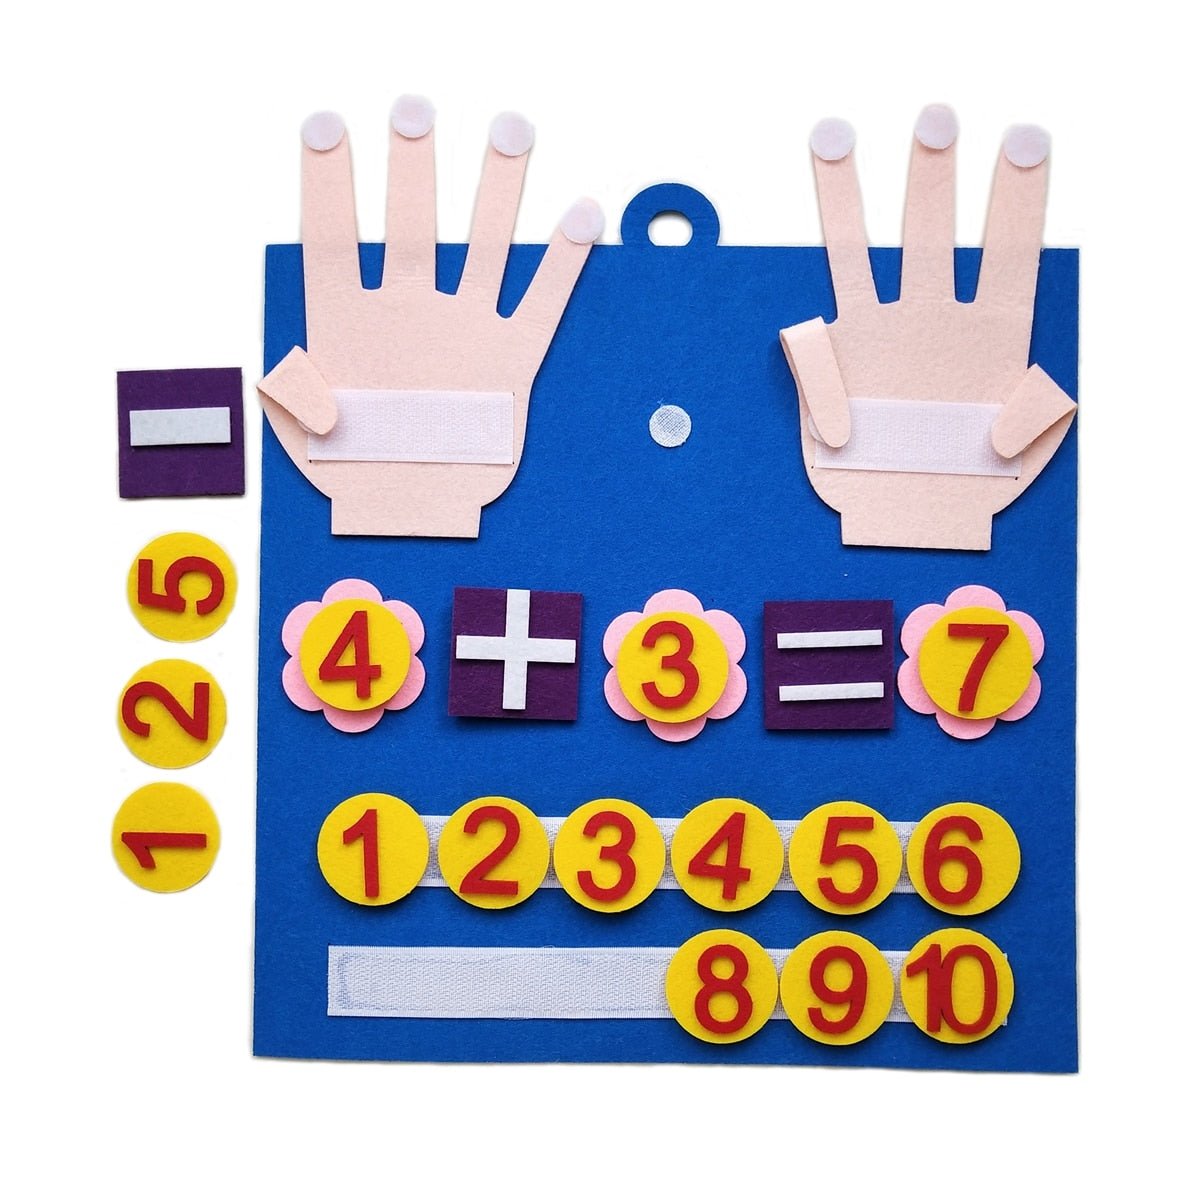 Montessori-Fingerzahlen: Lernspielzeug aus Filz für Kinder, frühkindliche Mathematik und Intelligenzförderung, 30x30 cm - Mond-Baby